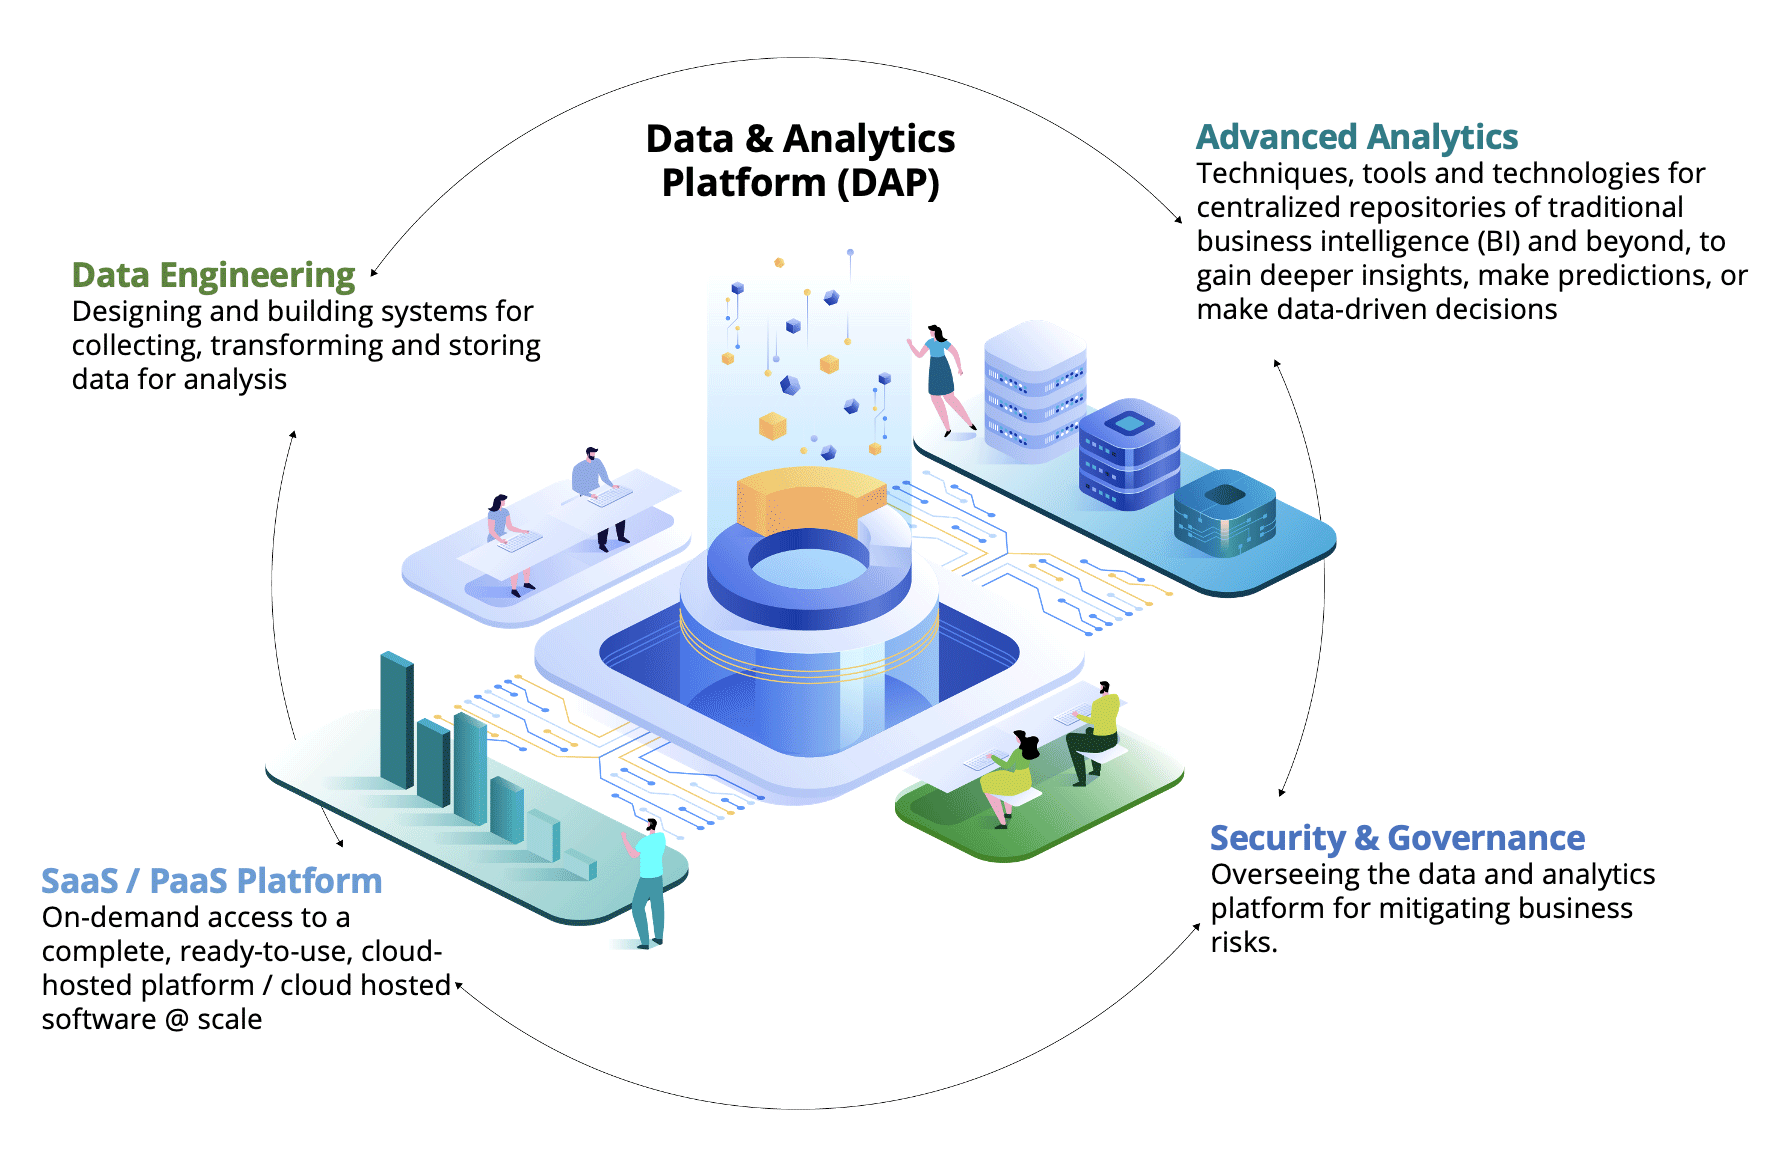 Data & Analytics Platform (DAP) infographic